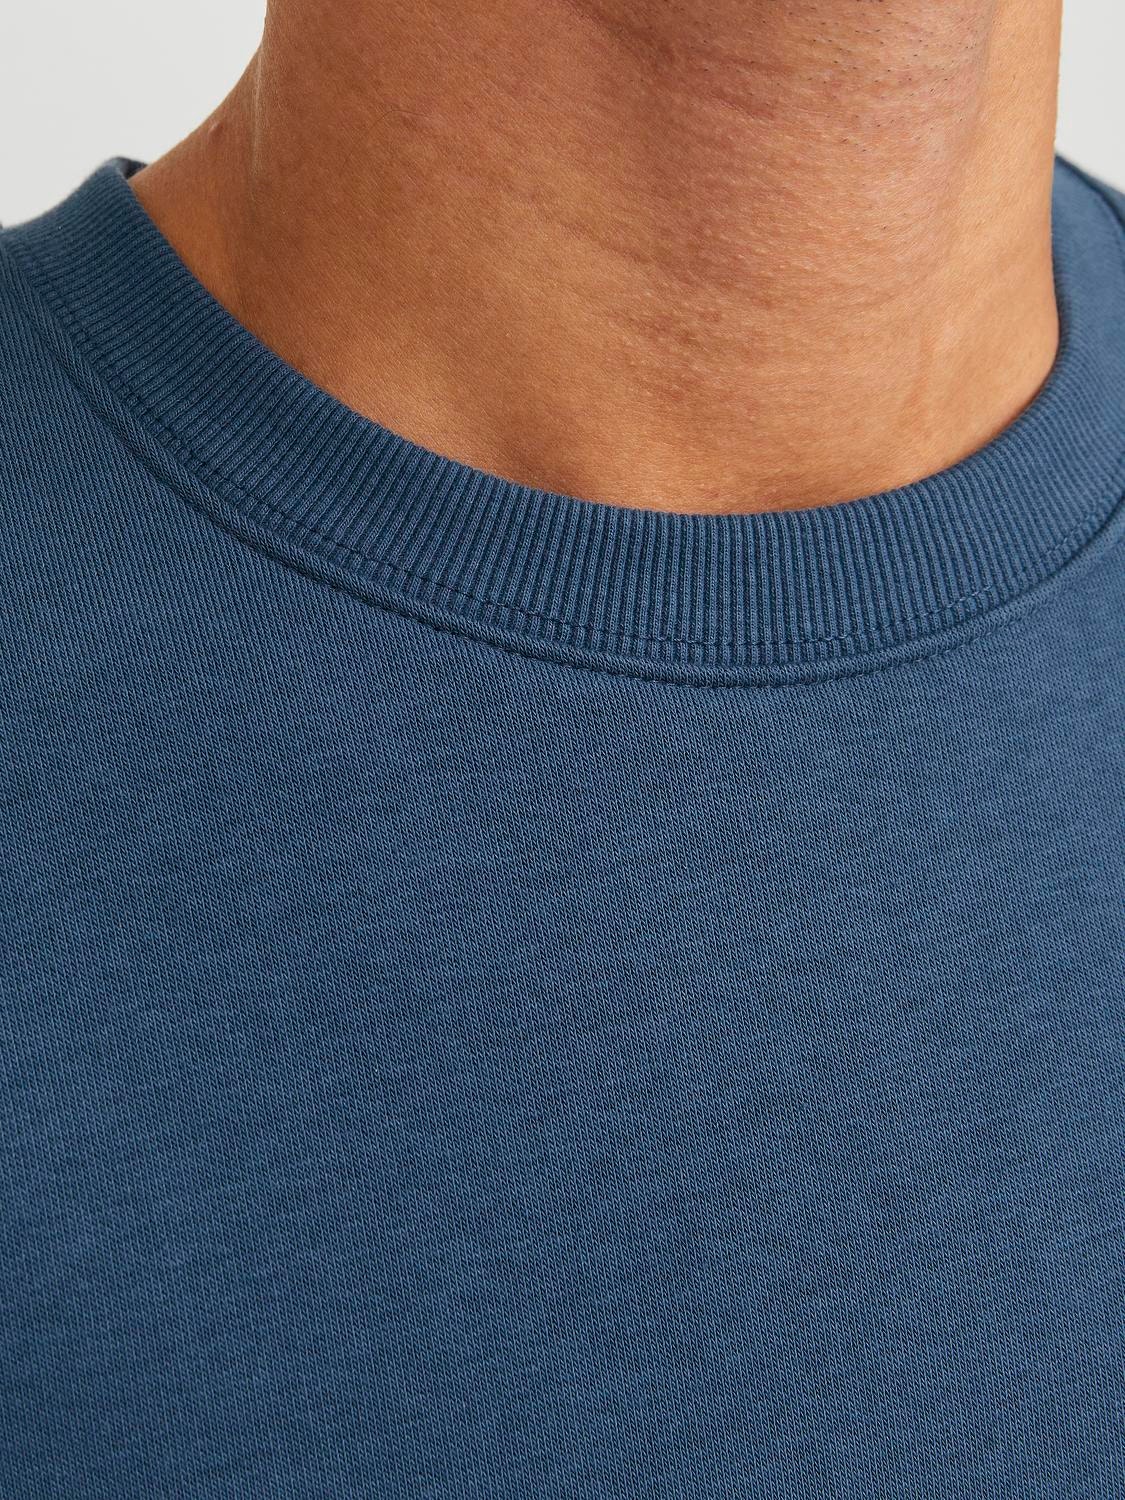 Jack & Jones Effen Sweatshirt met ronde hals -Ensign Blue - 12208182